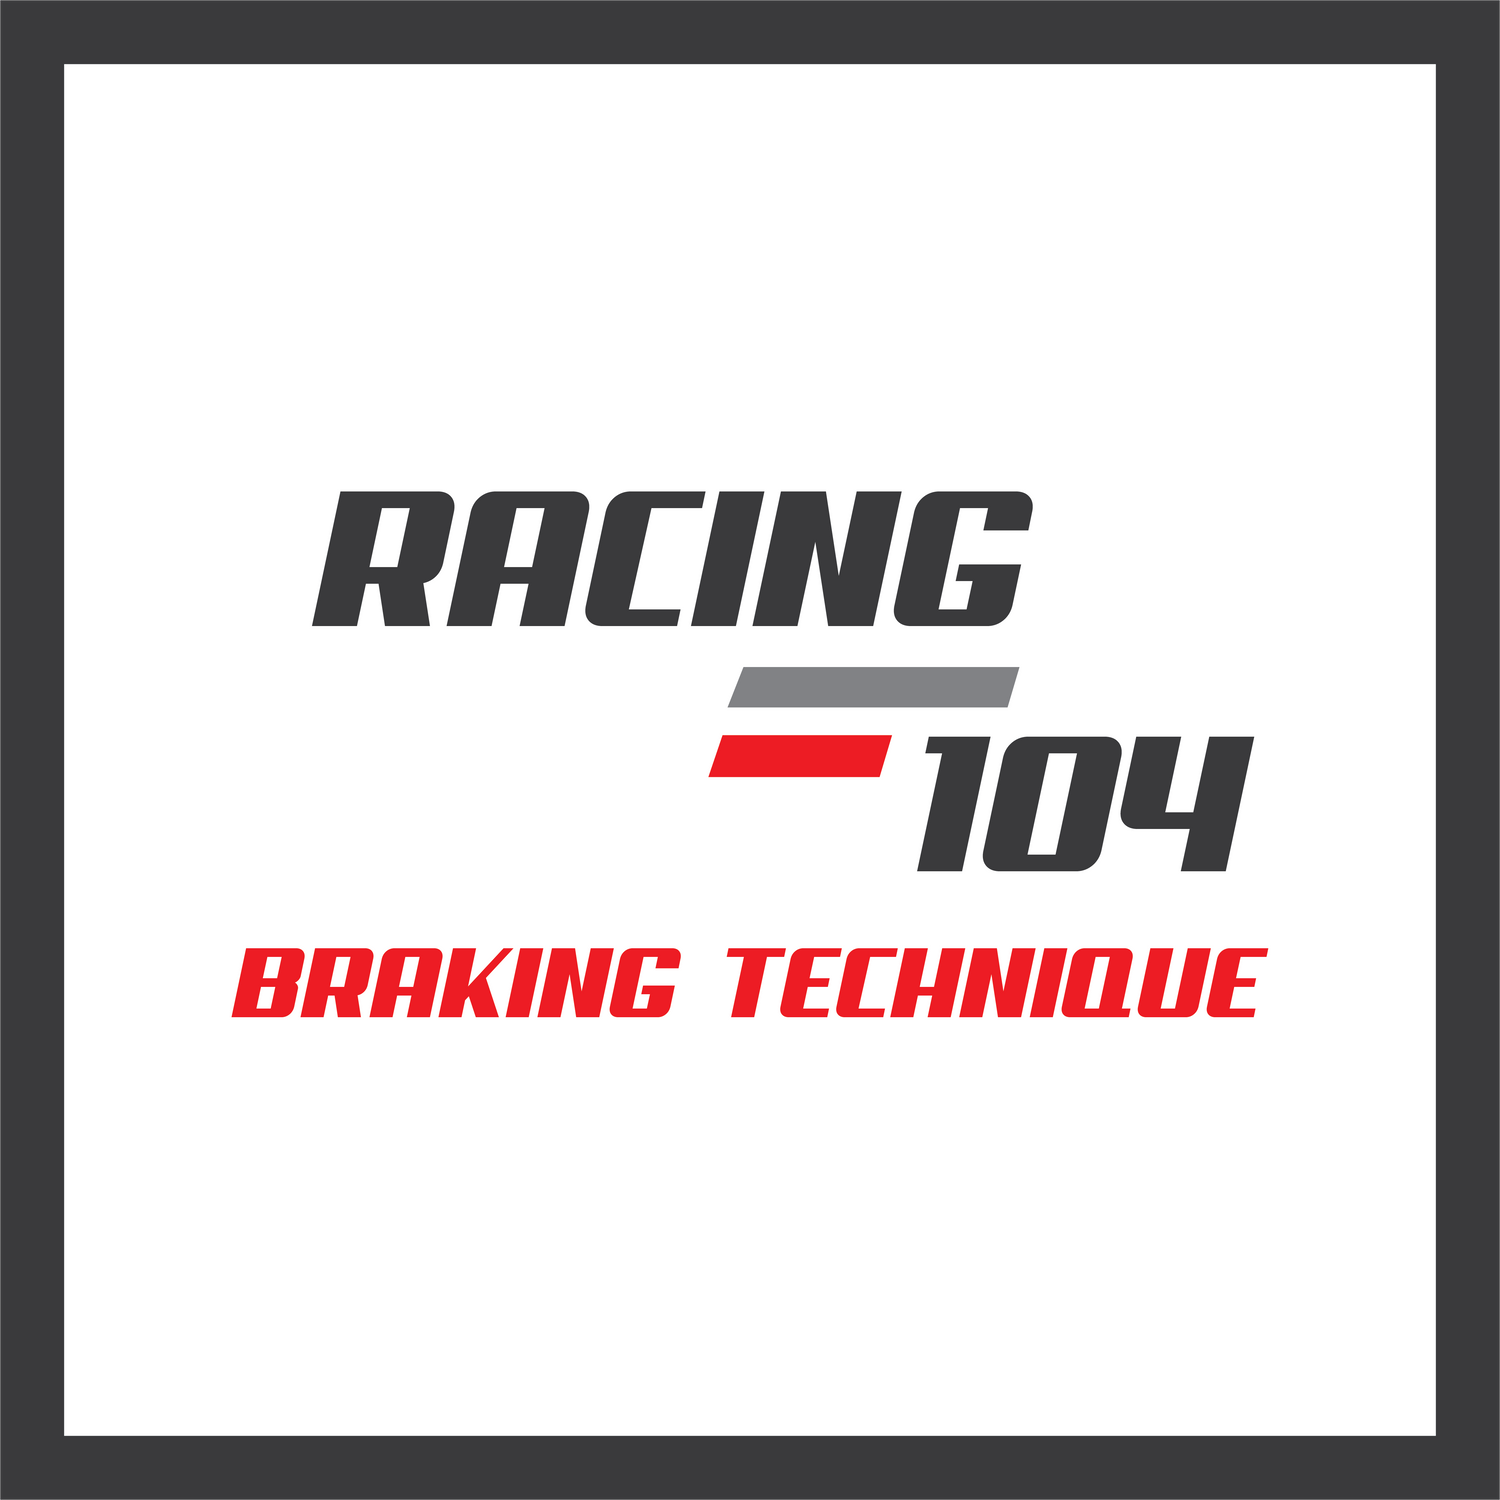 Racing 104 - Braking Technique